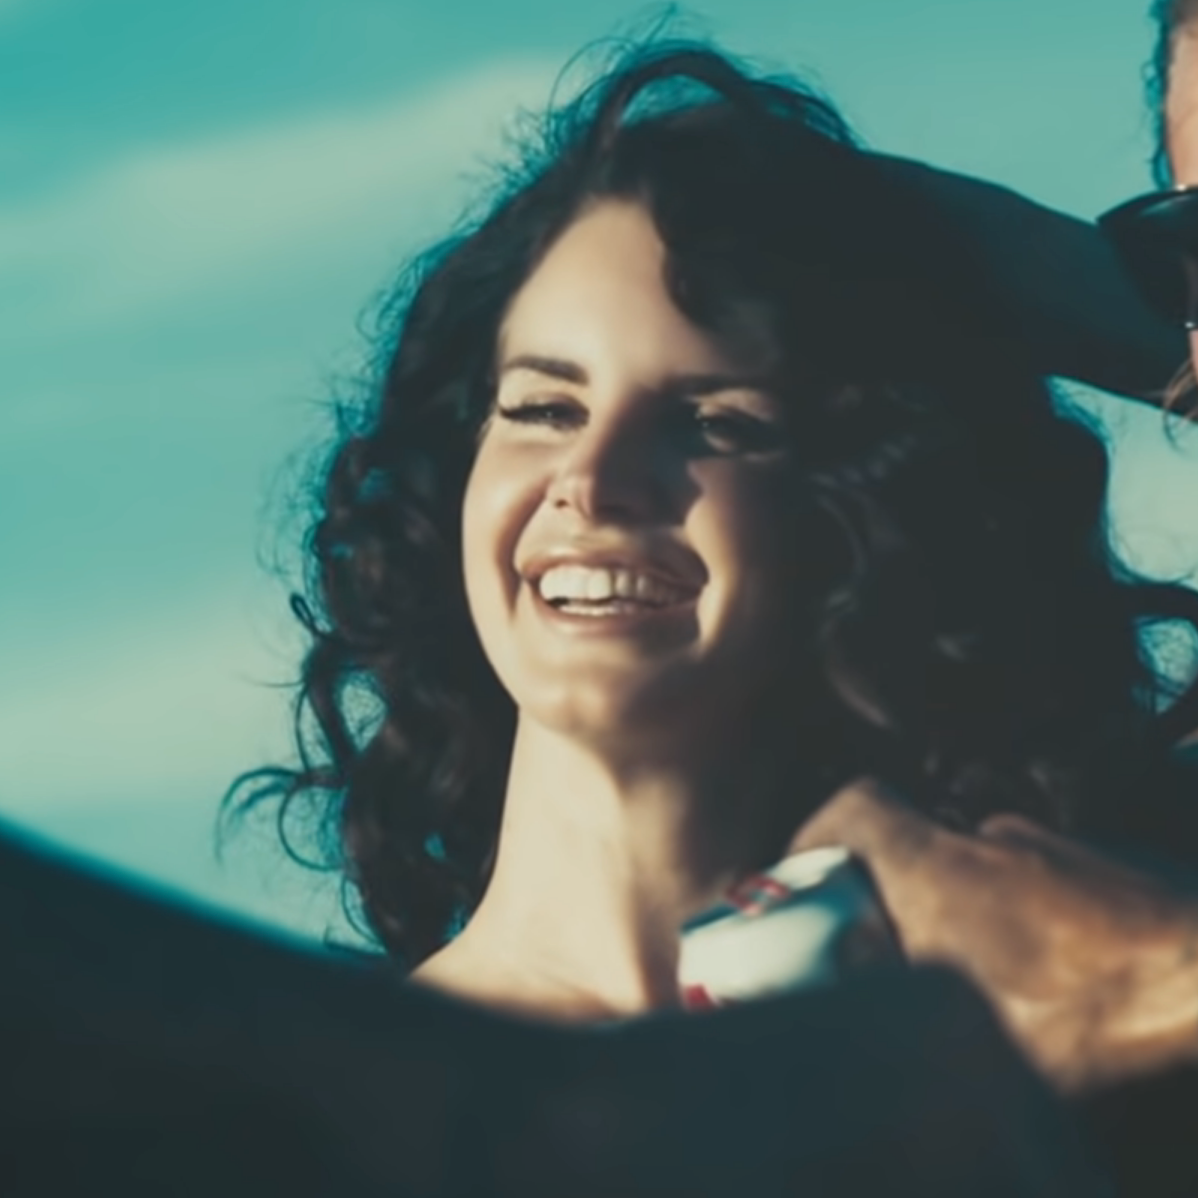 Sexy Girl Vidos - Lana Del Radio: Lana Del Rey's Songs Get Spliced With Movies